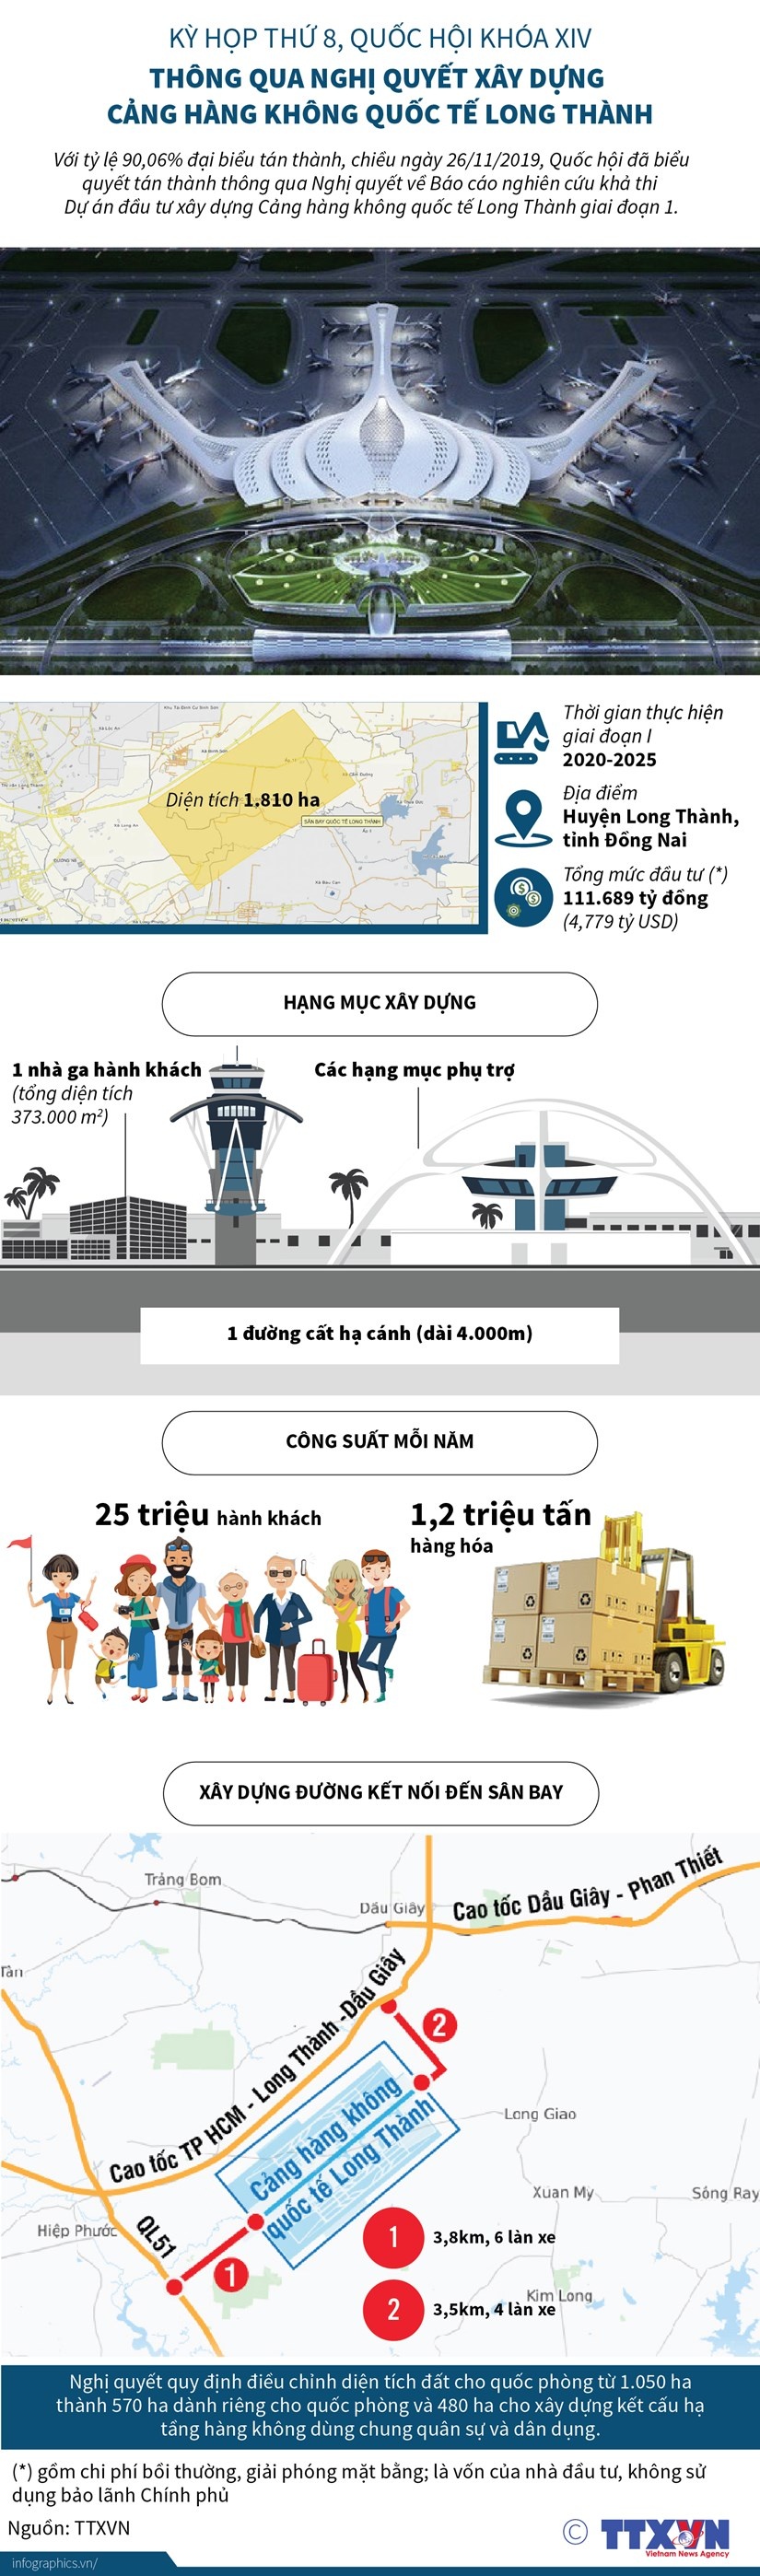 Những thông số về Cảng hàng không quốc tế Long Thành